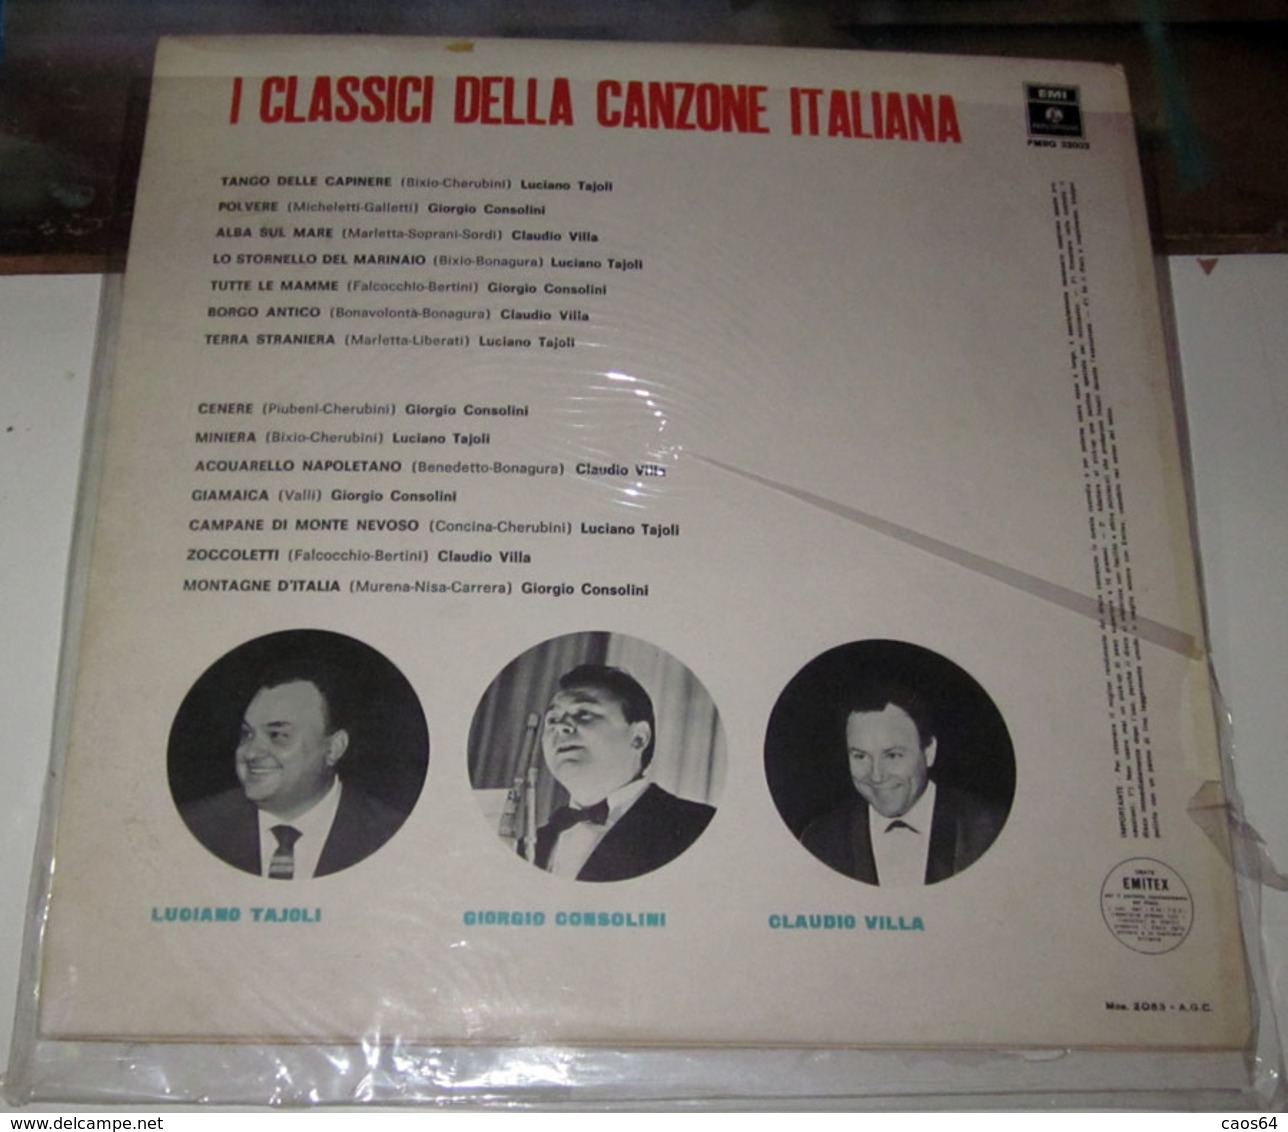 LUCIANO TAJOLI GIORGIO CONSOLINI CLAUDIO VILLA I CLASSICI DELLA CANZONE ITALIANA - Altri - Musica Italiana